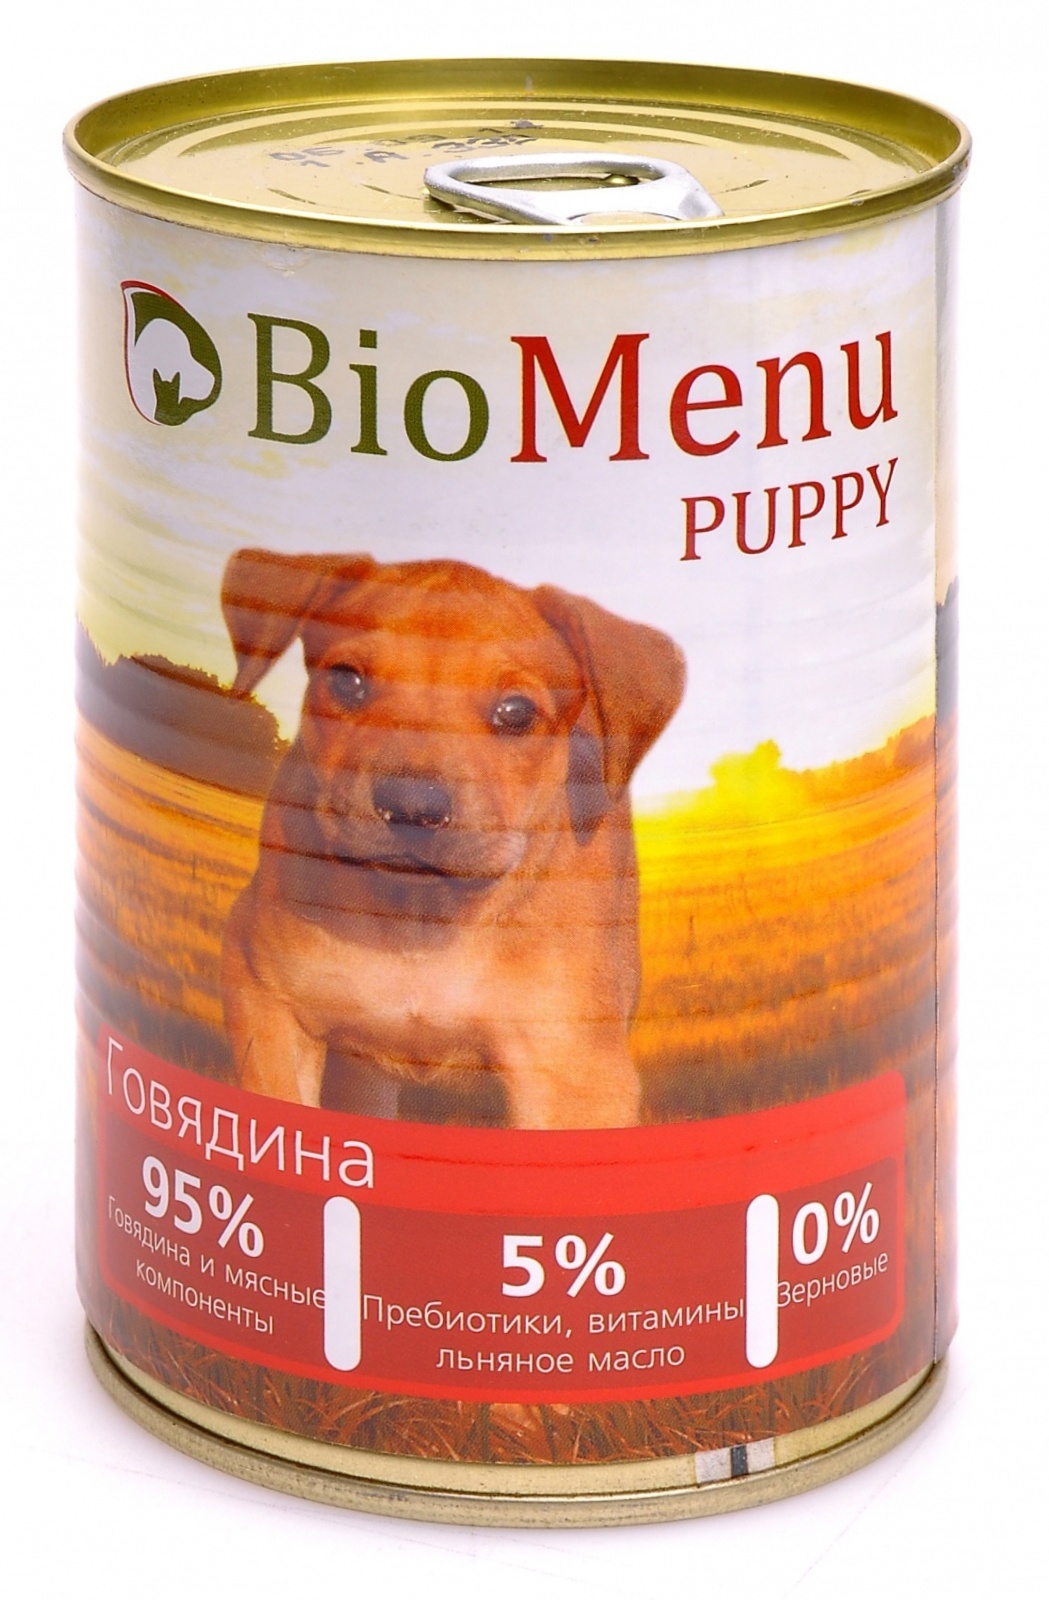 BioMenu BioMenu консервы для щенков с говядиной (100 г) biomenu biomenu консервы для щенков с говядиной 100 г